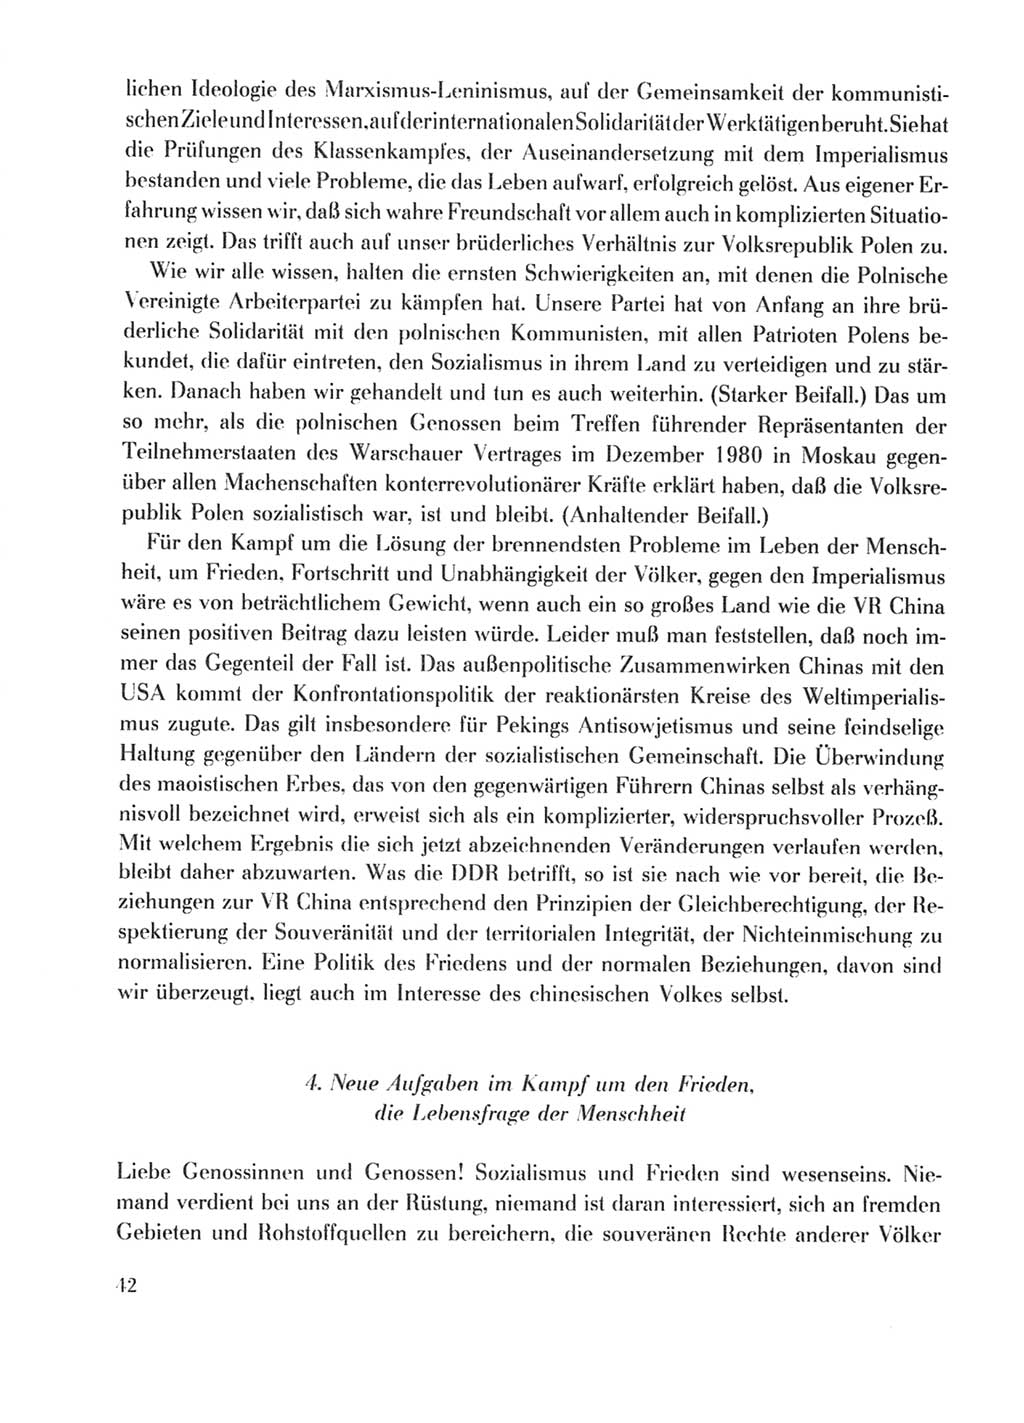 Protokoll der Verhandlungen des Ⅹ. Parteitages der Sozialistischen Einheitspartei Deutschlands (SED) [Deutsche Demokratische Republik (DDR)] 1981, Band 1, Seite 42 (Prot. Verh. Ⅹ. PT SED DDR 1981, Bd. 1, S. 42)